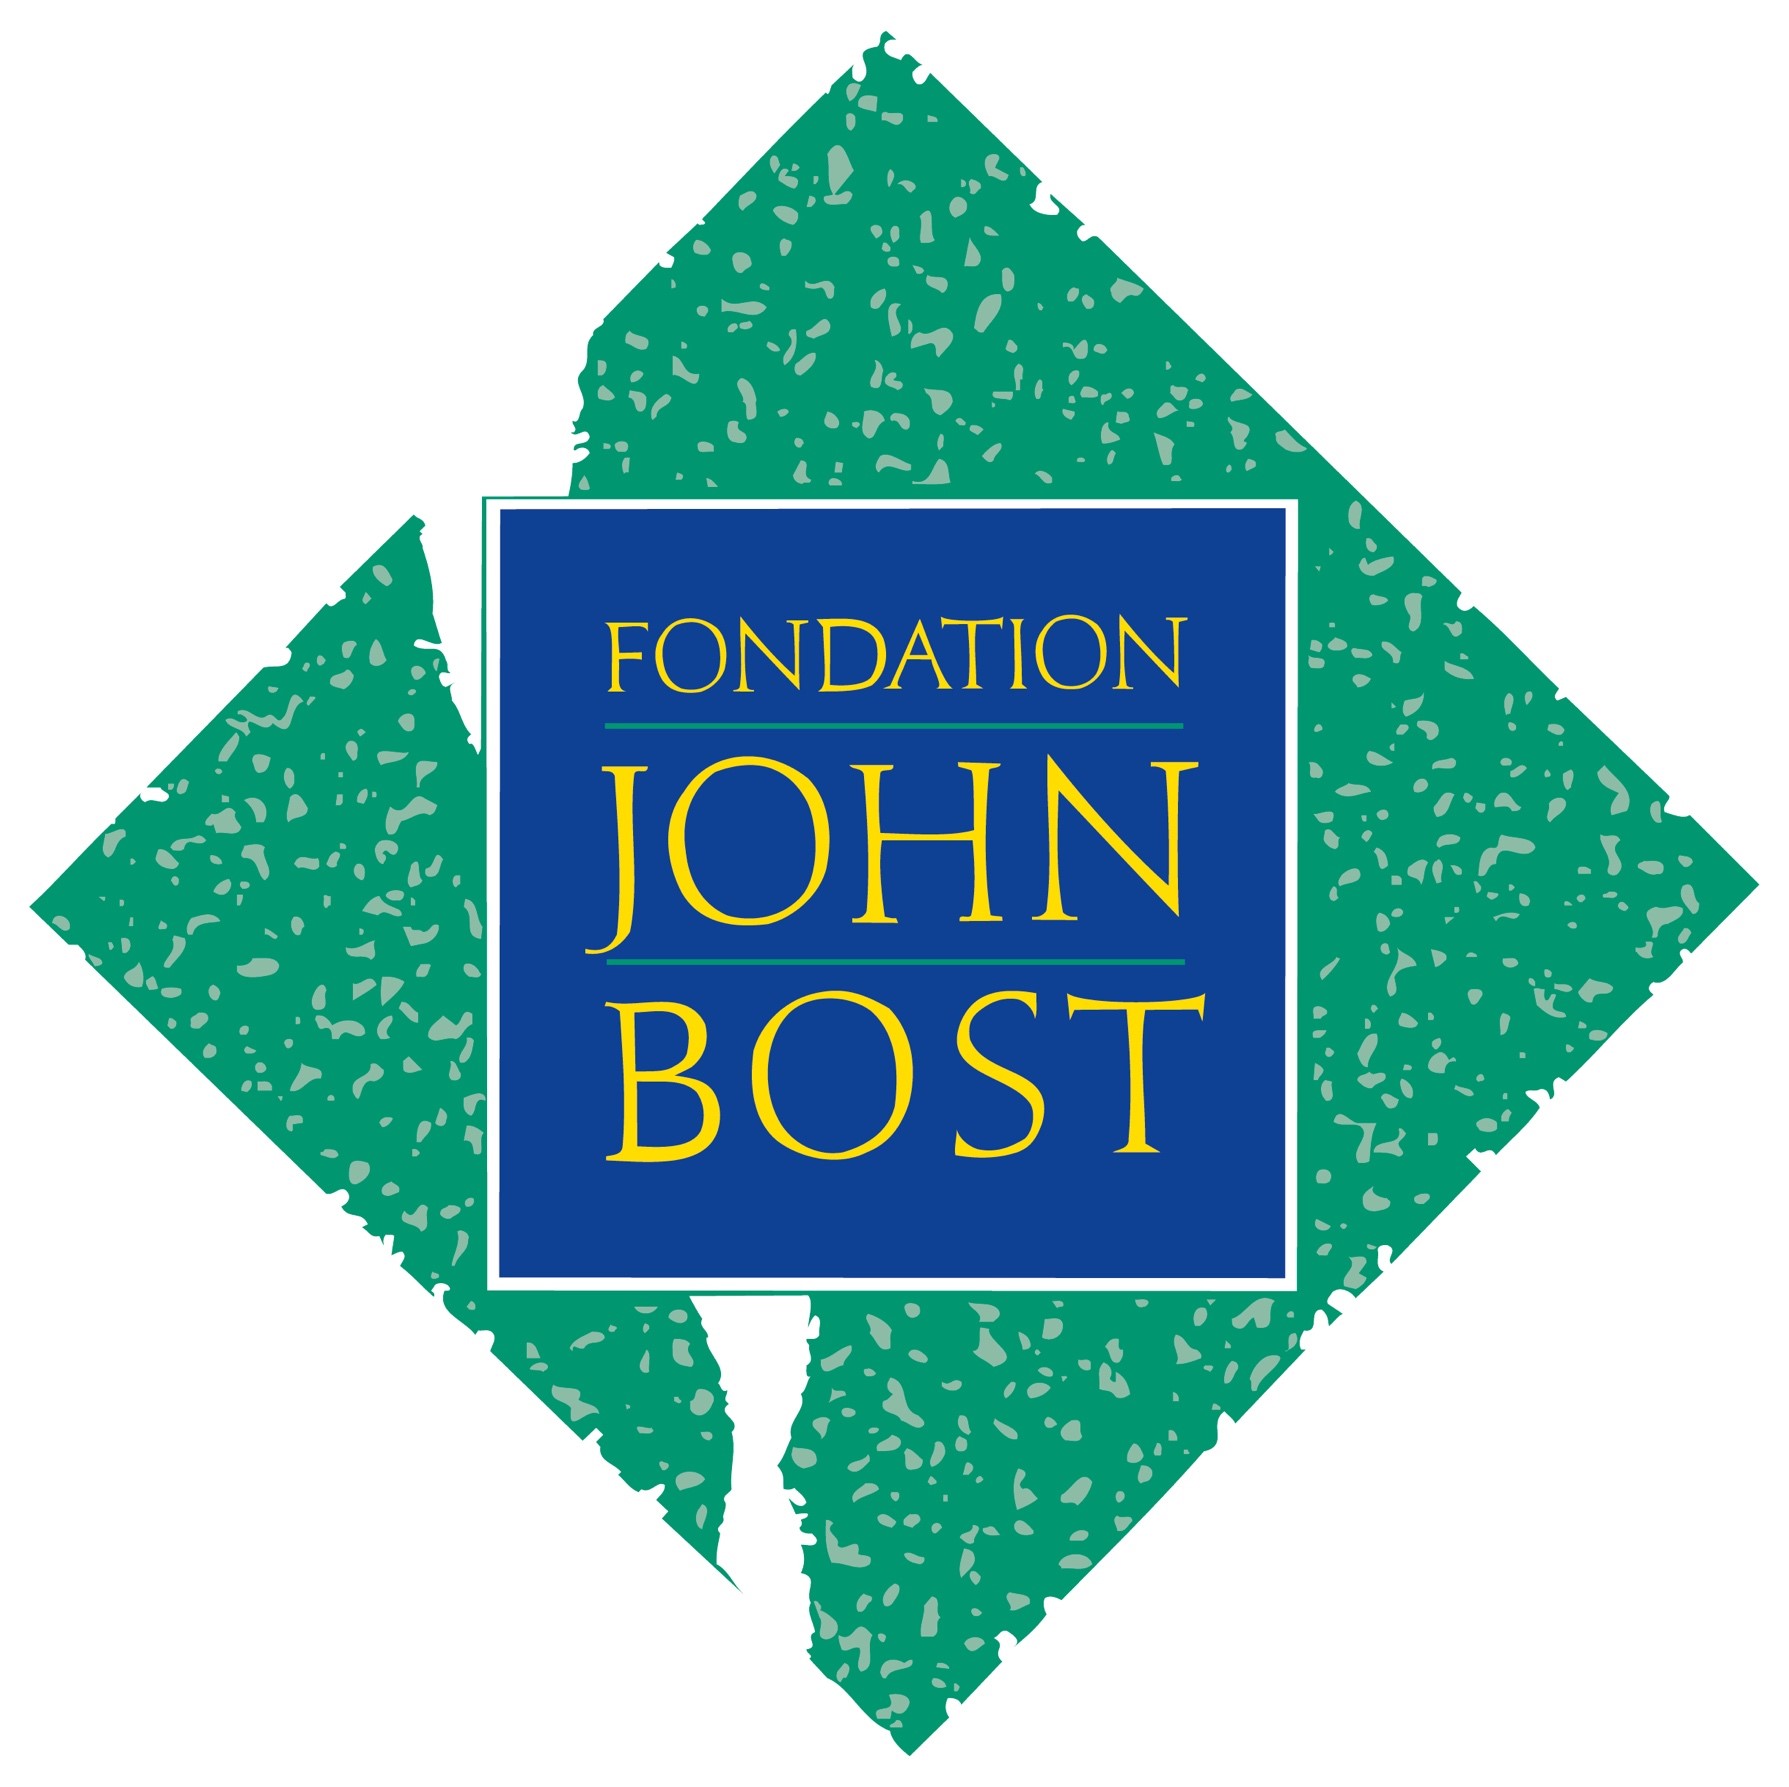 Fondation John Bost - www.johnbost.org (new window)